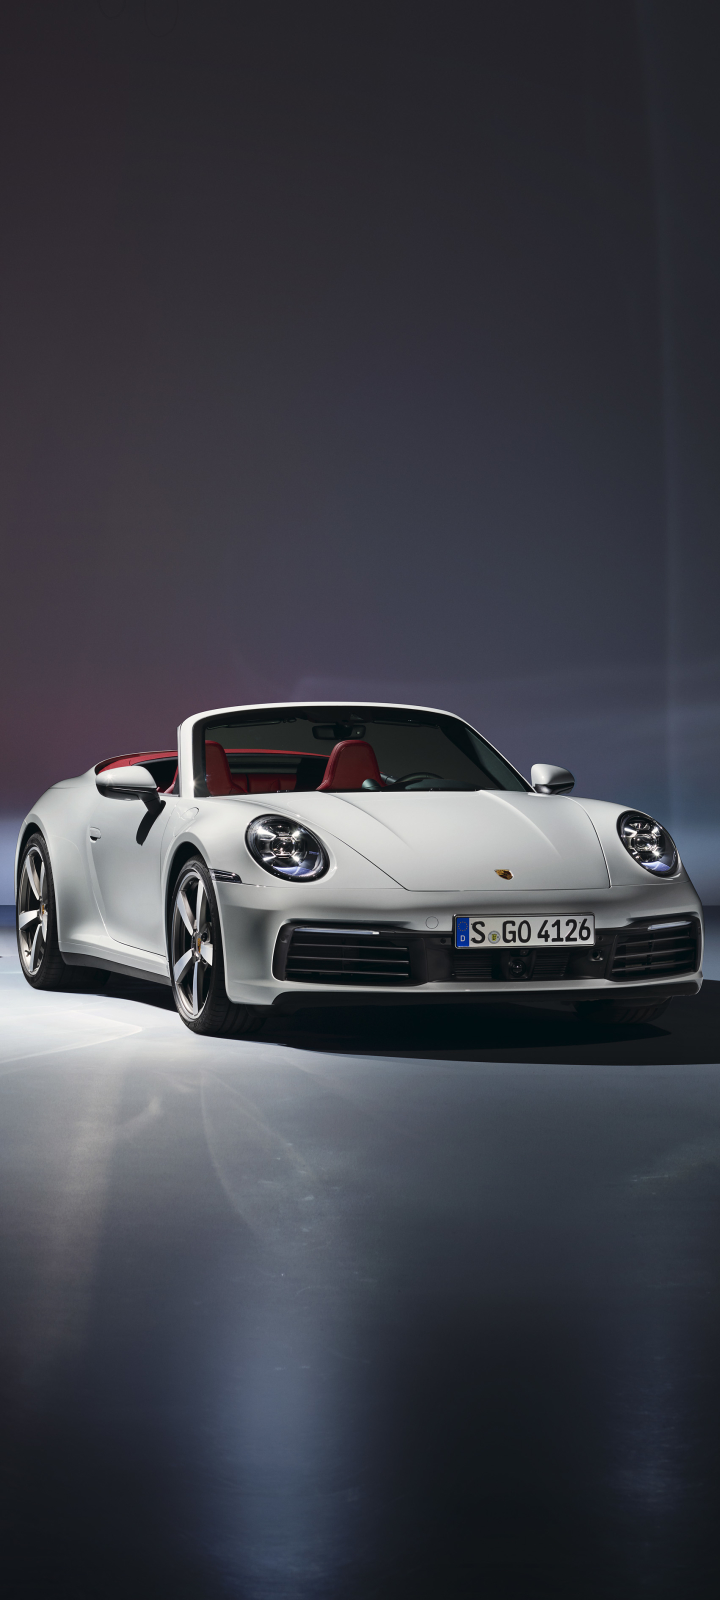 Descarga gratuita de fondo de pantalla para móvil de Porsche, Coche, Porsche 911, Vehículo, Vehículos, Porsche 911 Carrera, Coche Blanco.